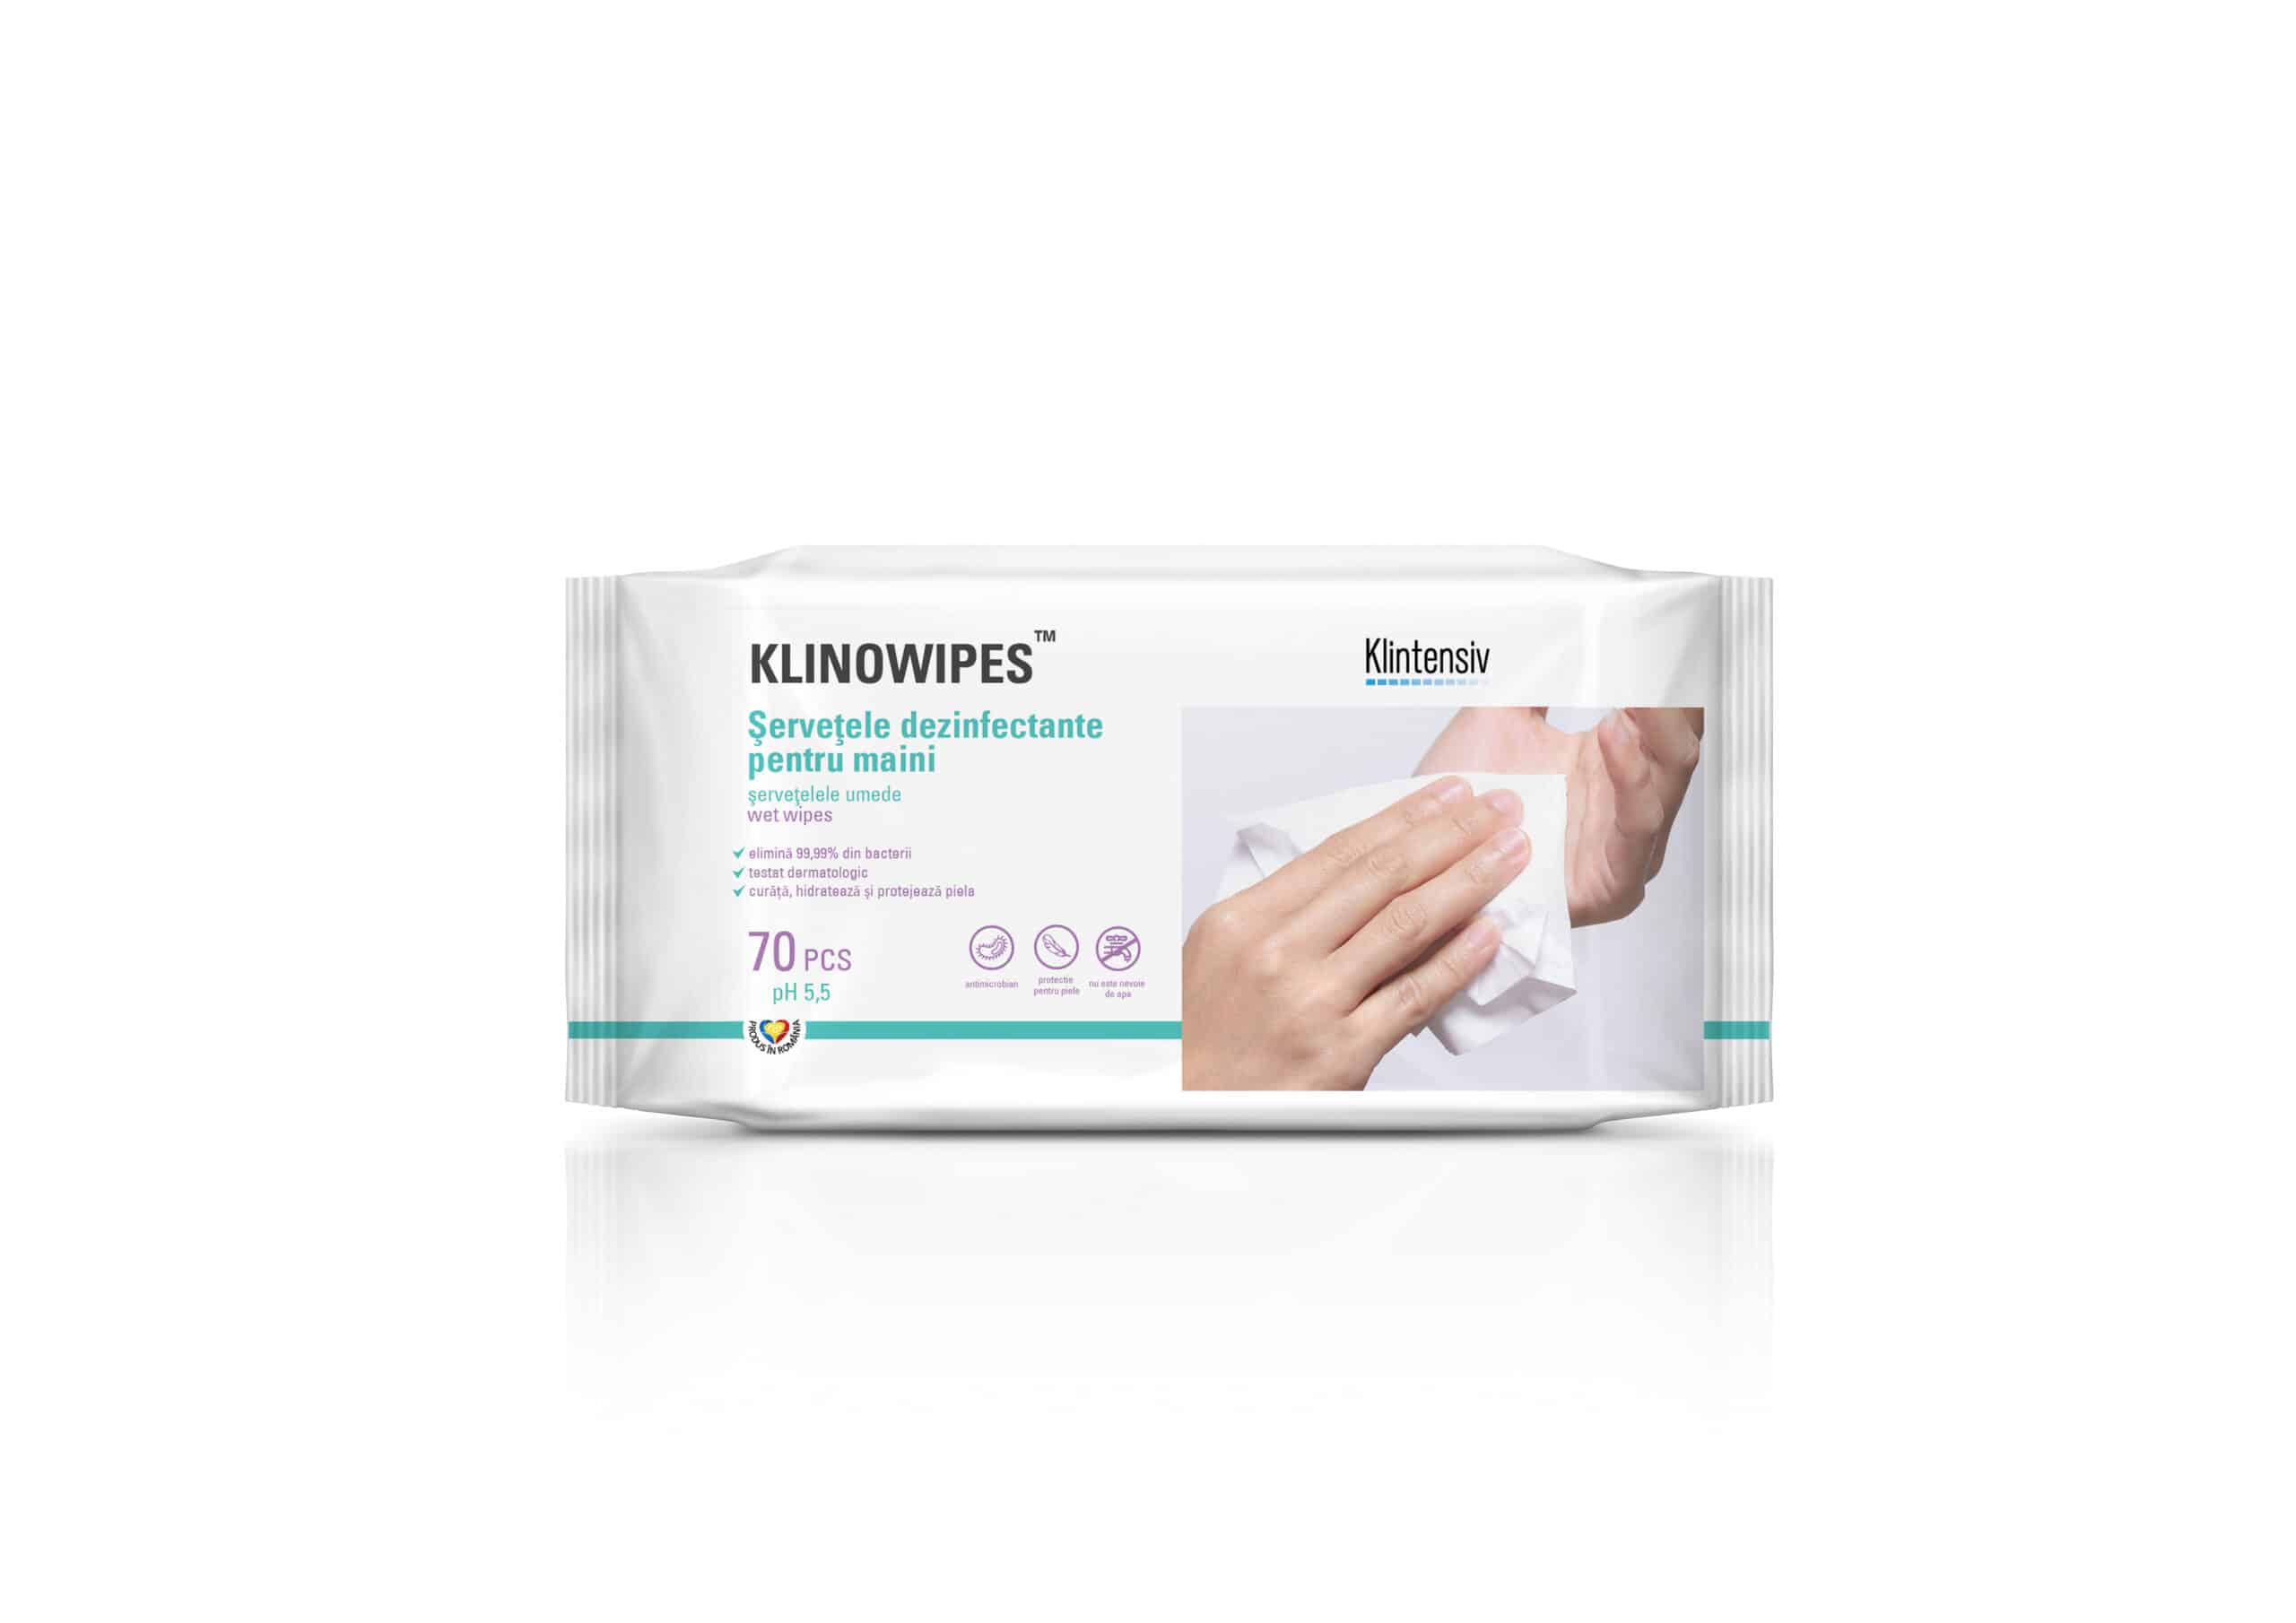 KLINOWIPES® - Servetele dezinfectante pentru maini, 70 buc.